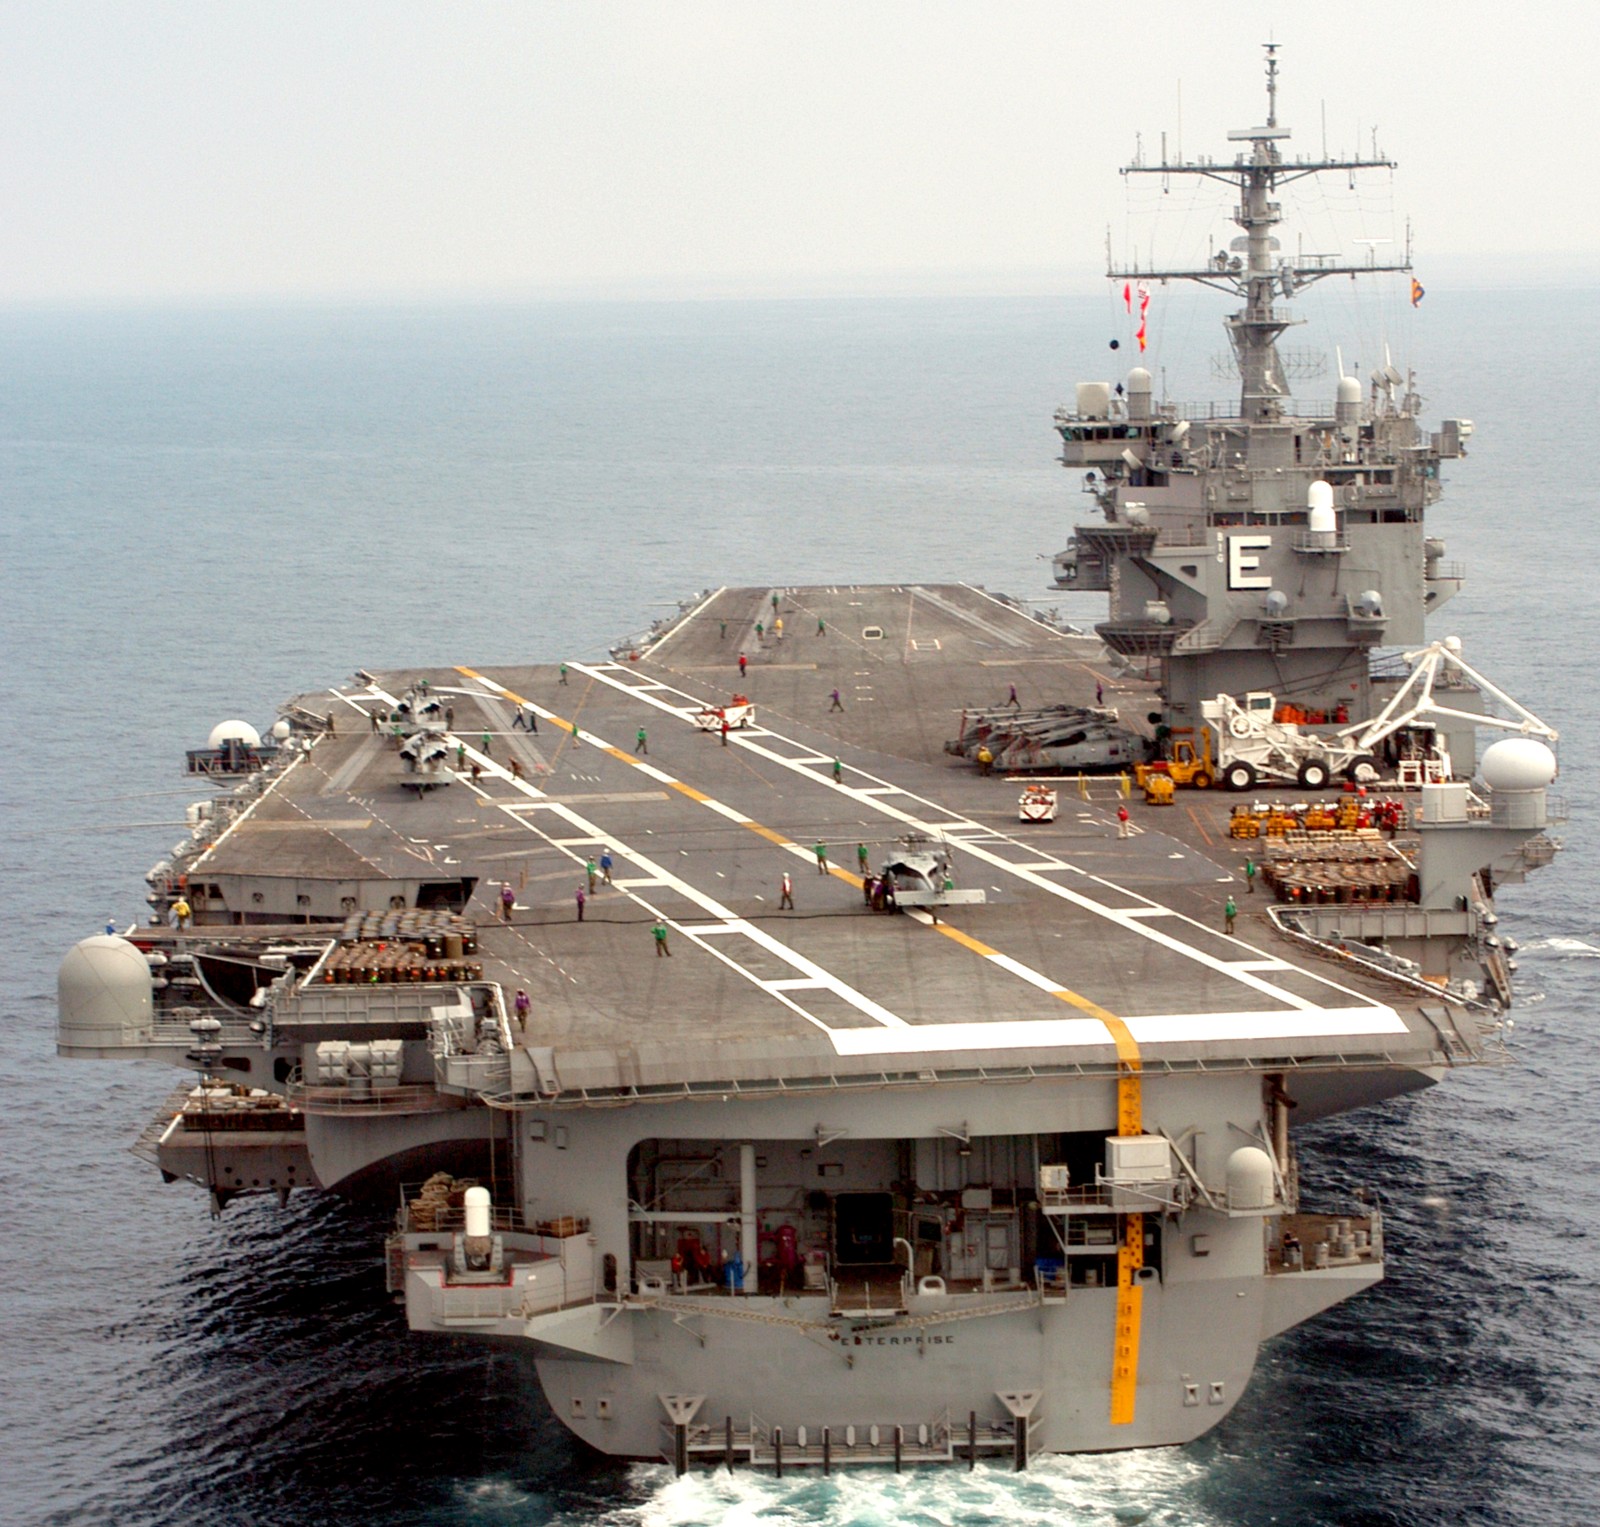 cvn-65 uss enterprise aircraft carrier us navy 2003 81